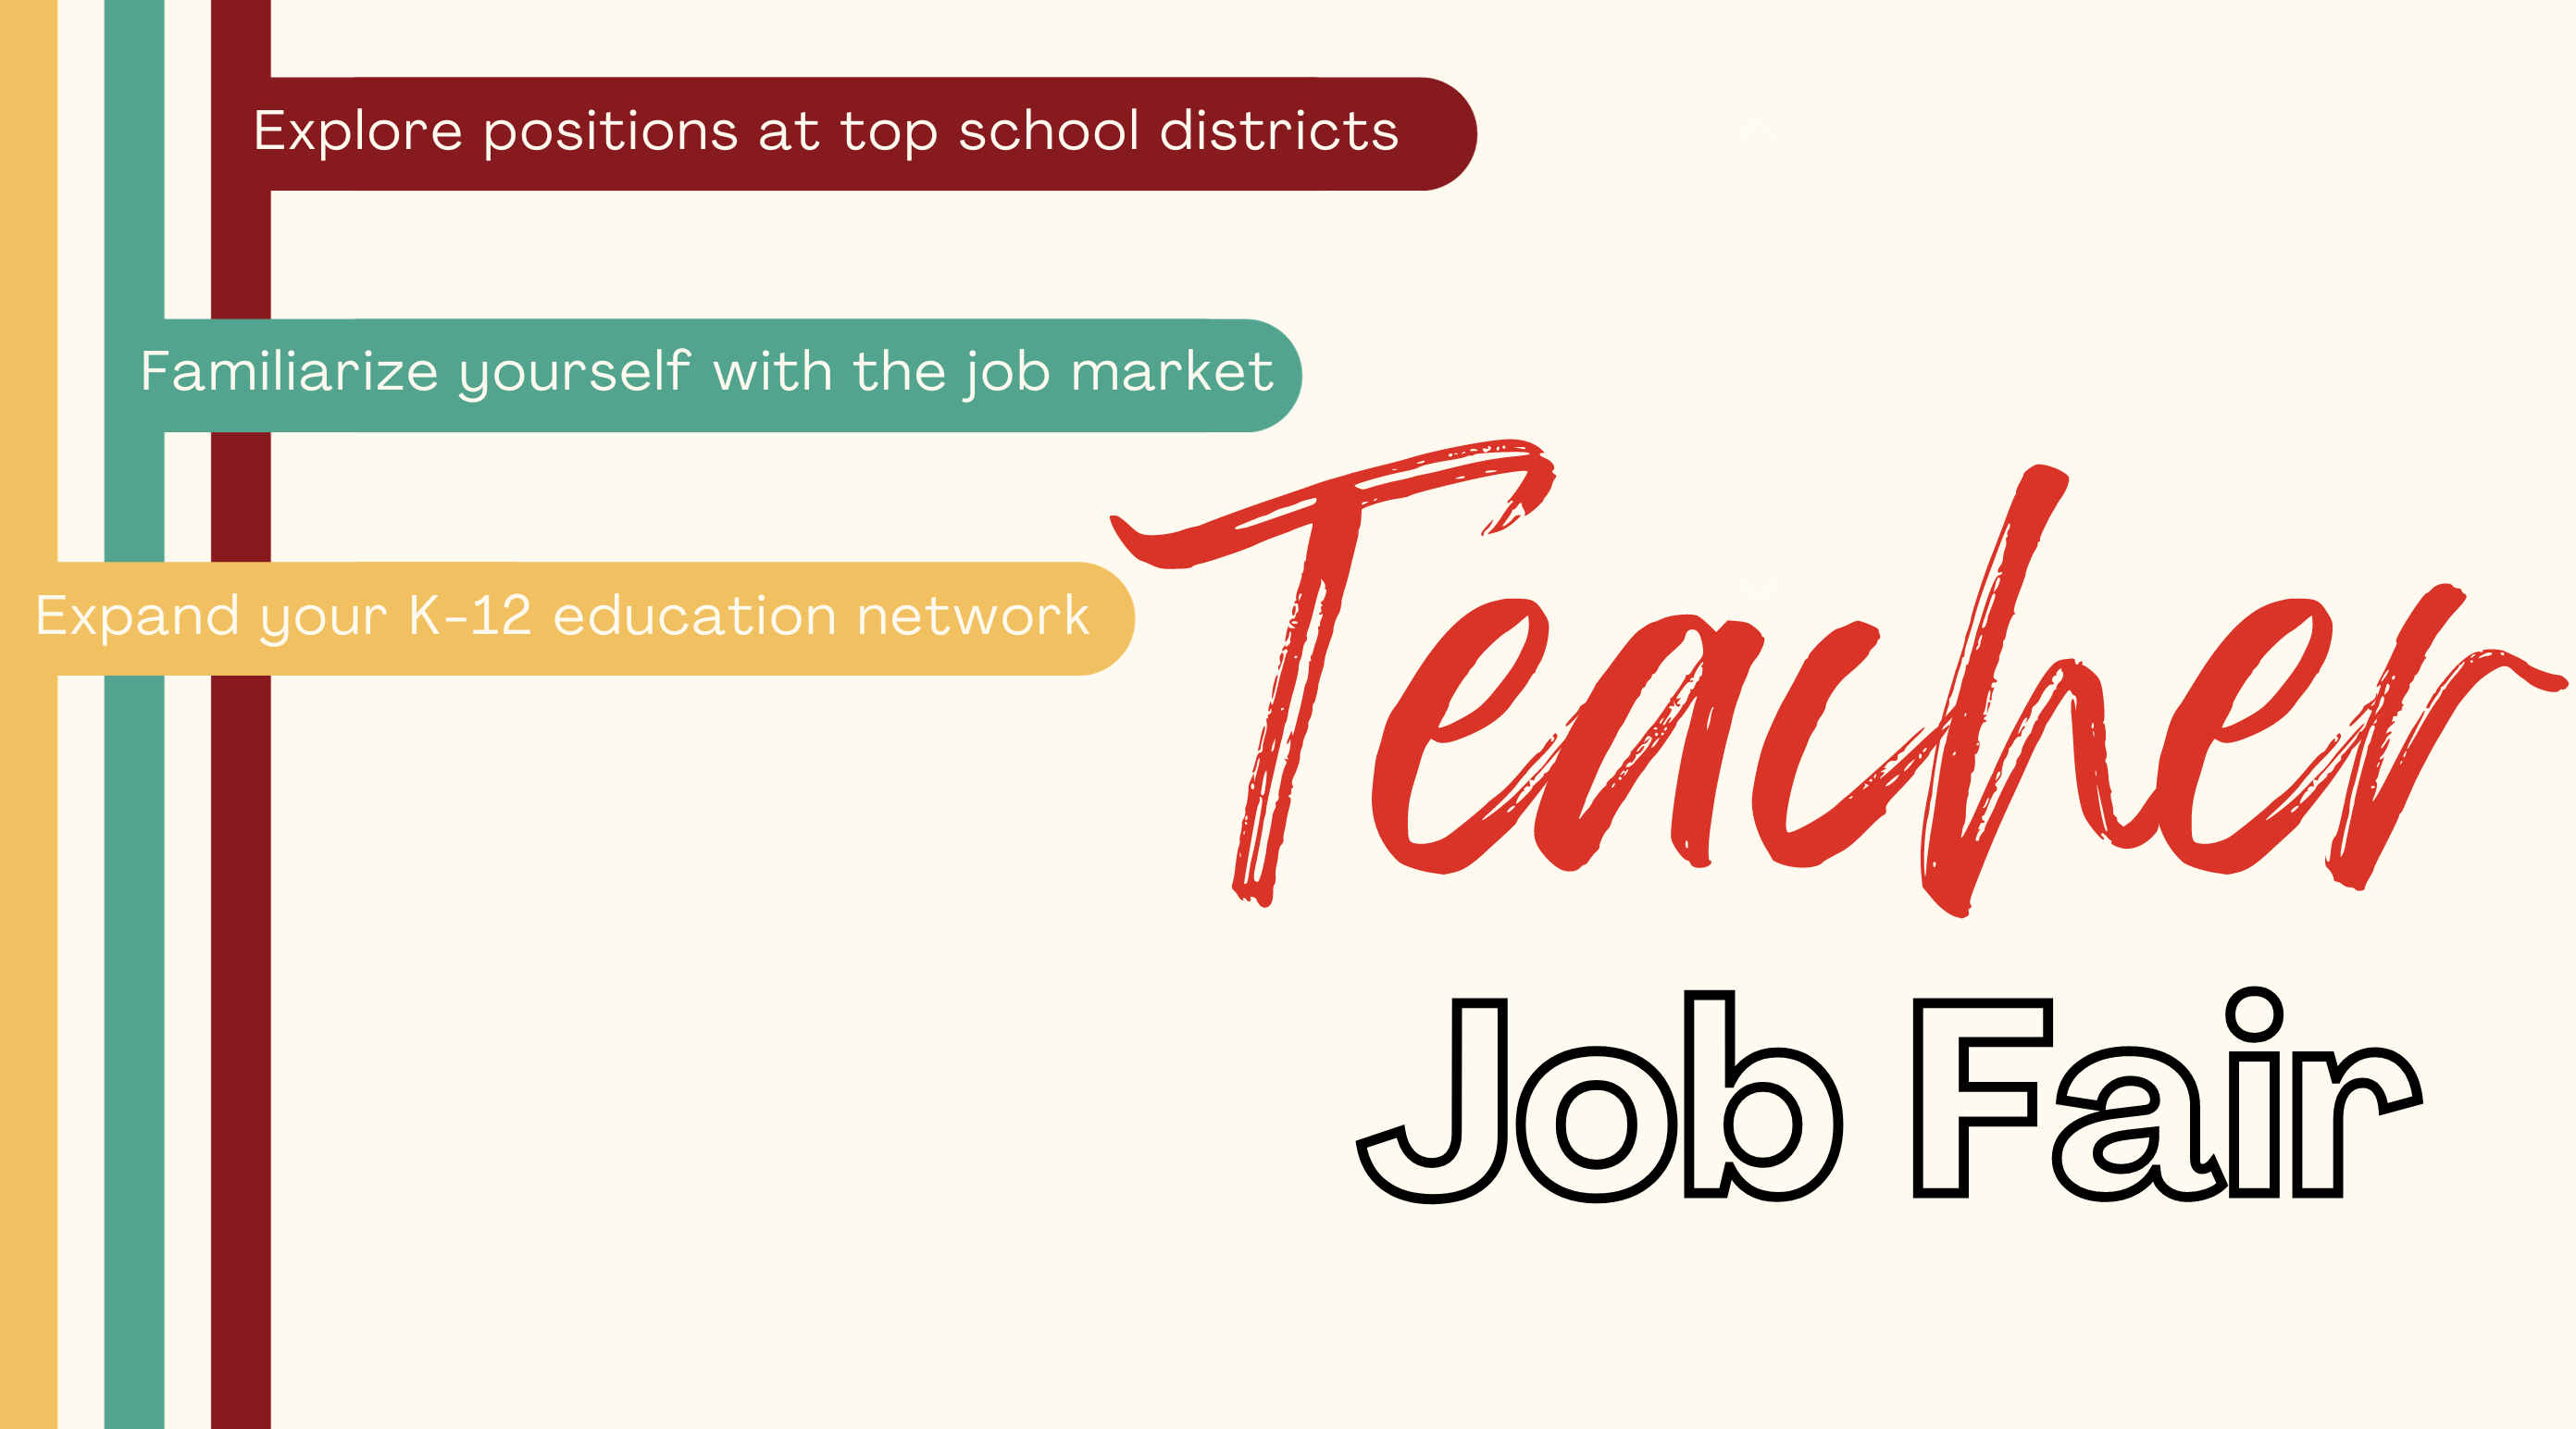 Teacher Job Fair Landing Page